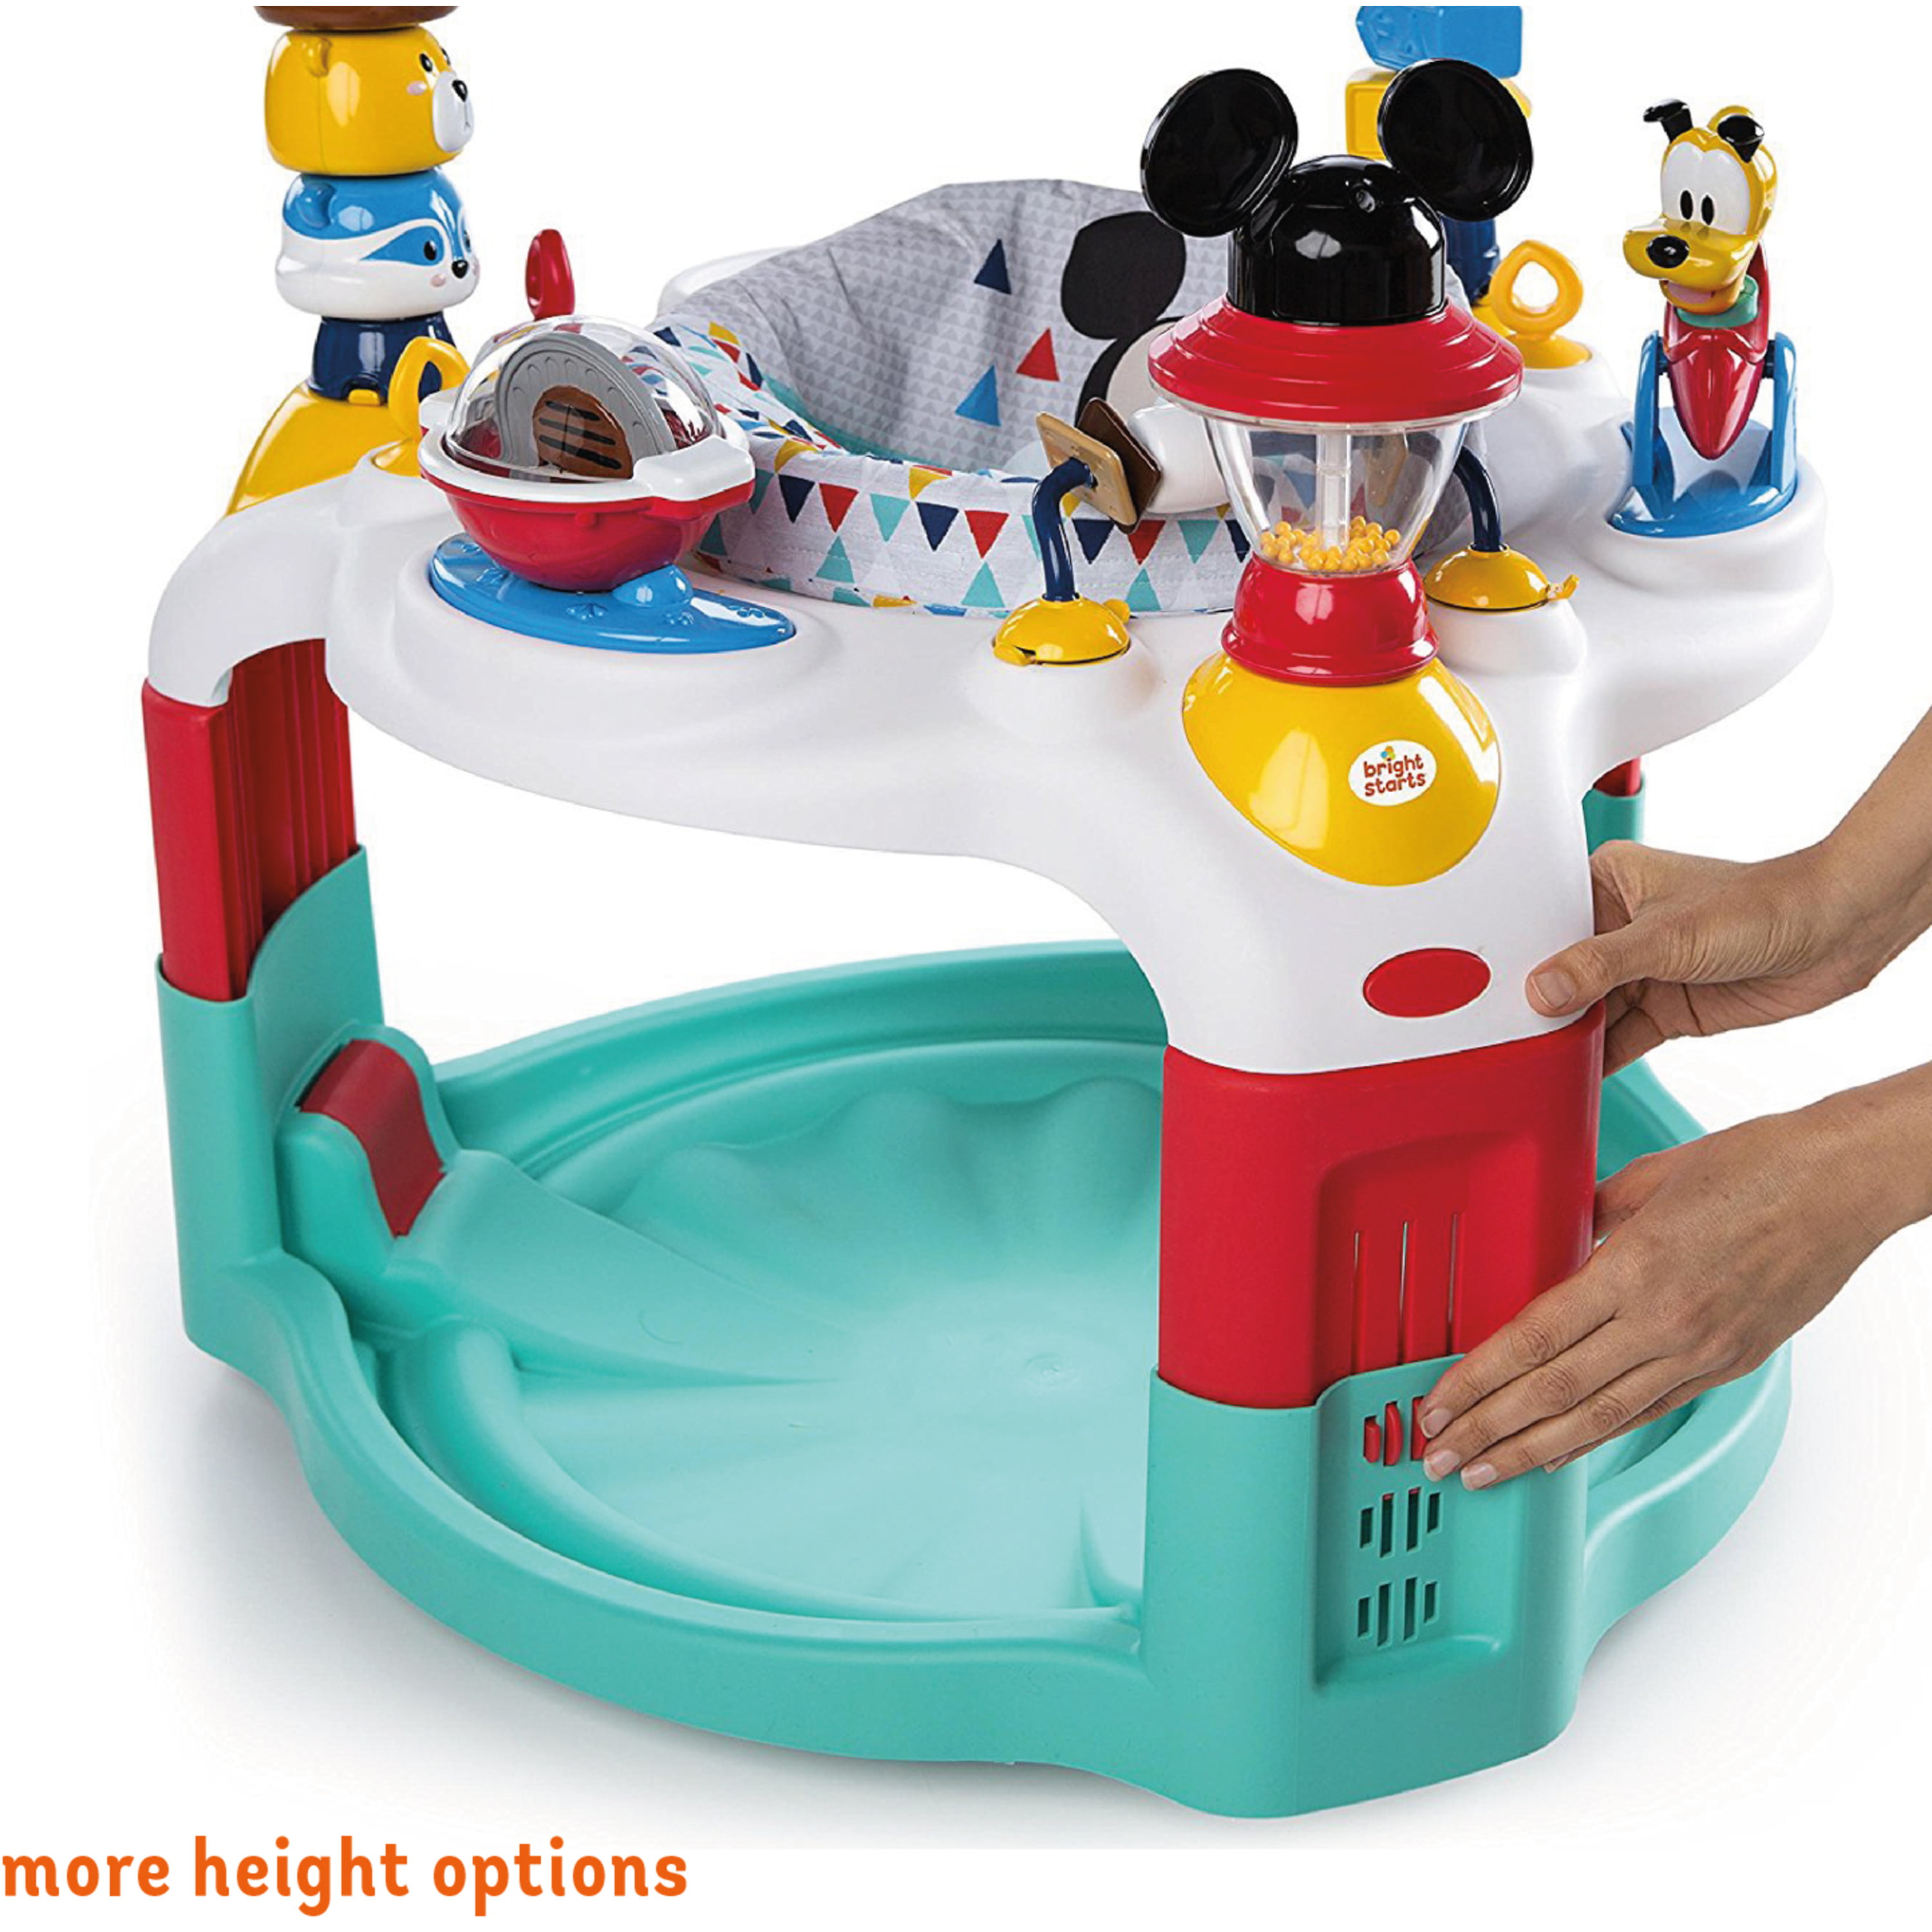 Saco colonias o camping Mickey Mouse de Disney - Montse Interiors